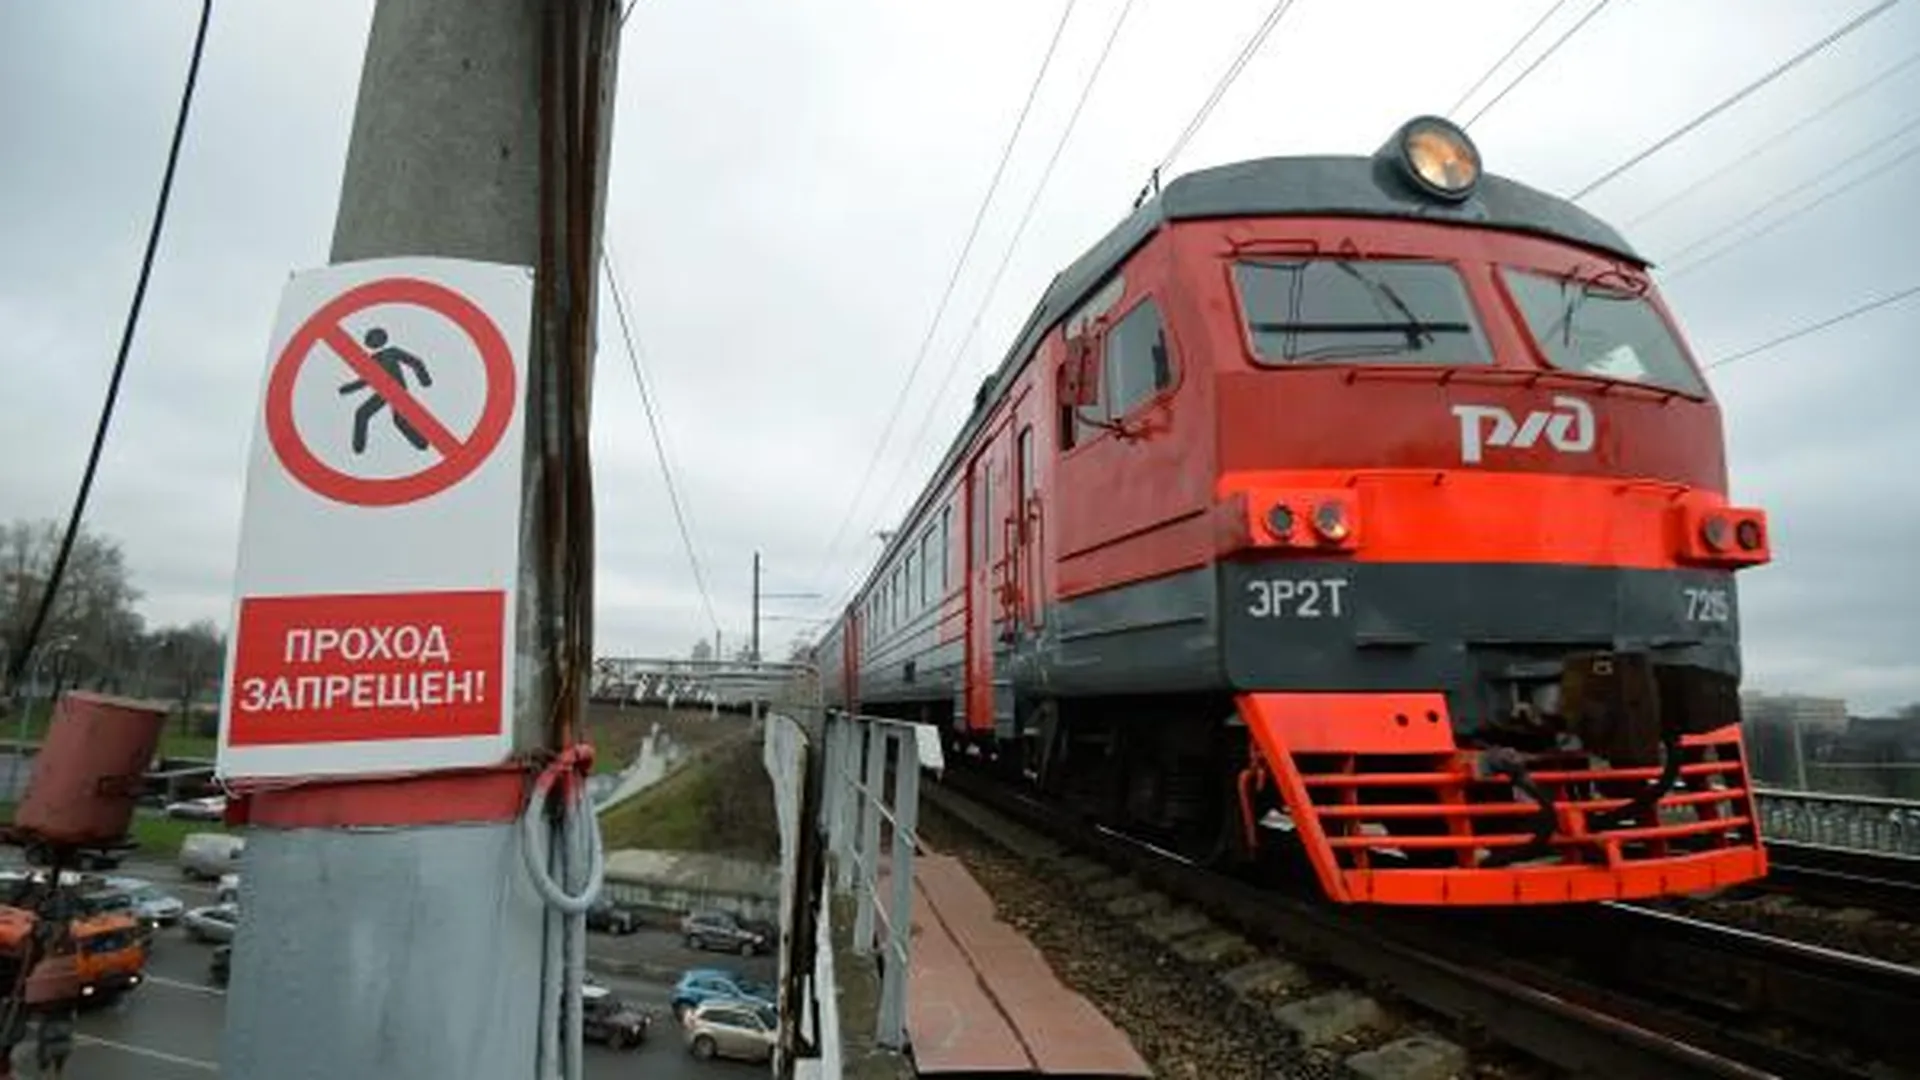 Мужчина погиб под колесами поезда в Москве